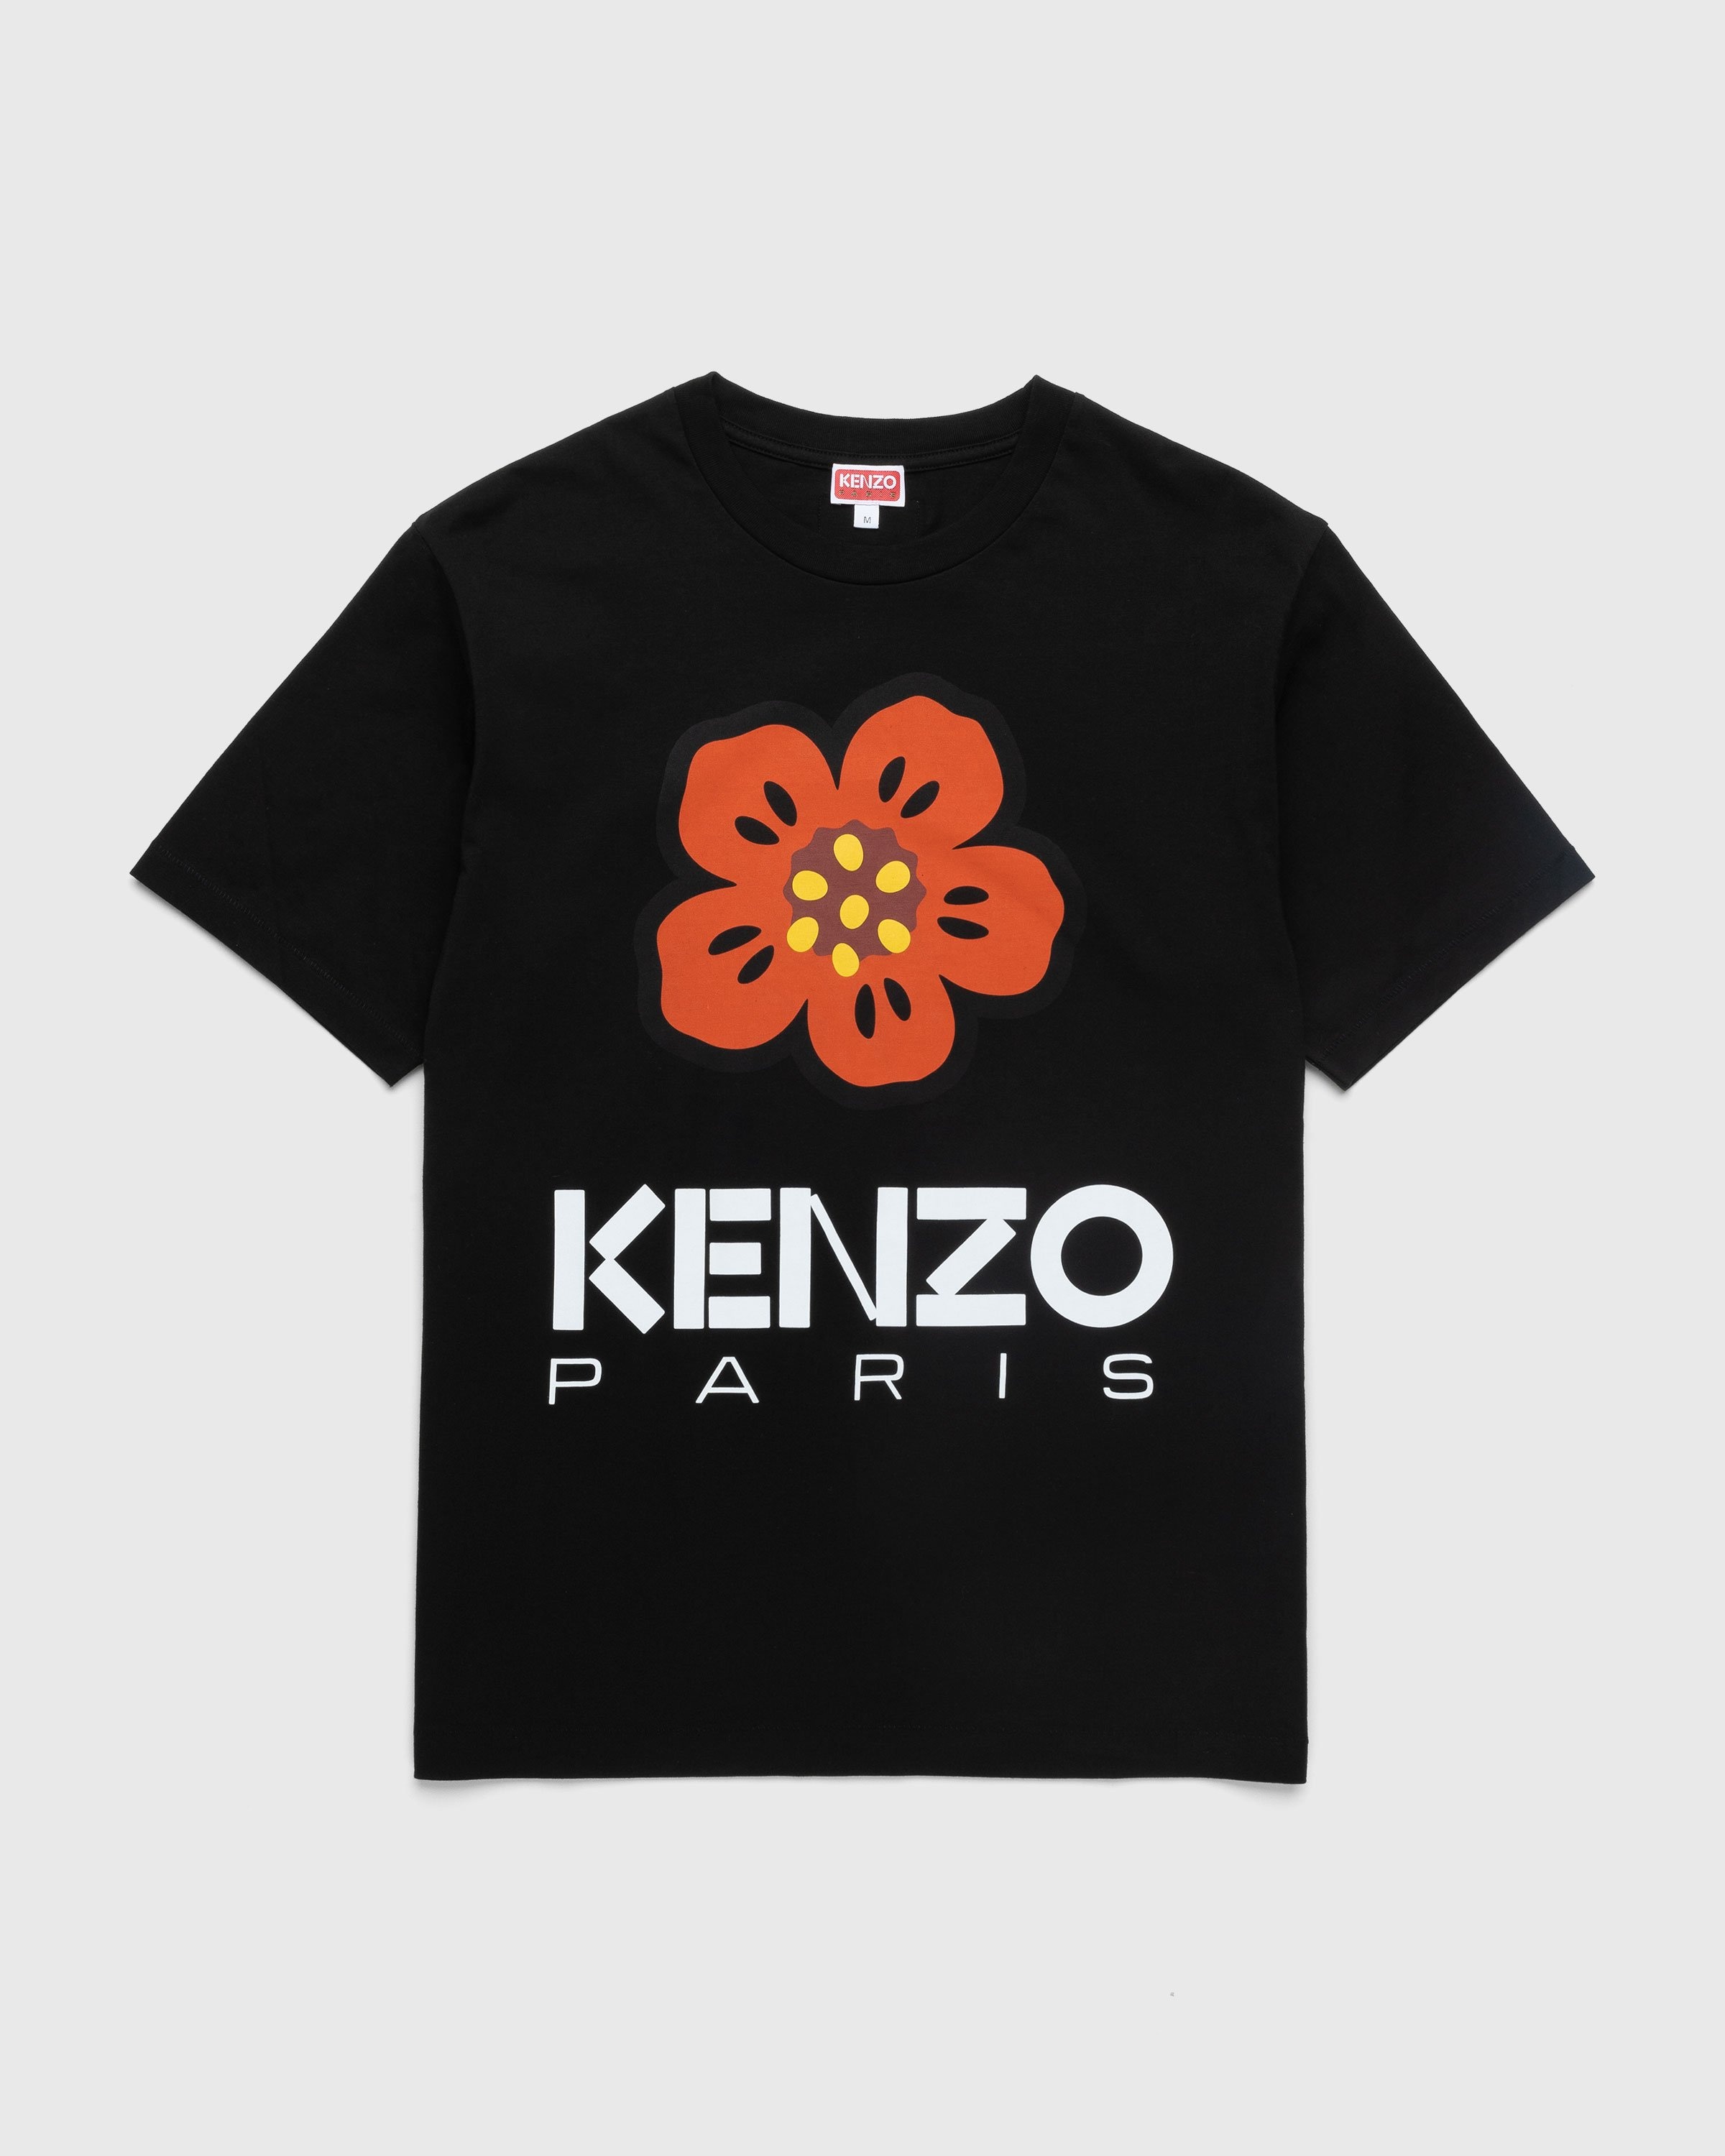 KENZO BY NIGO MAN BLACK T-SHIRTS